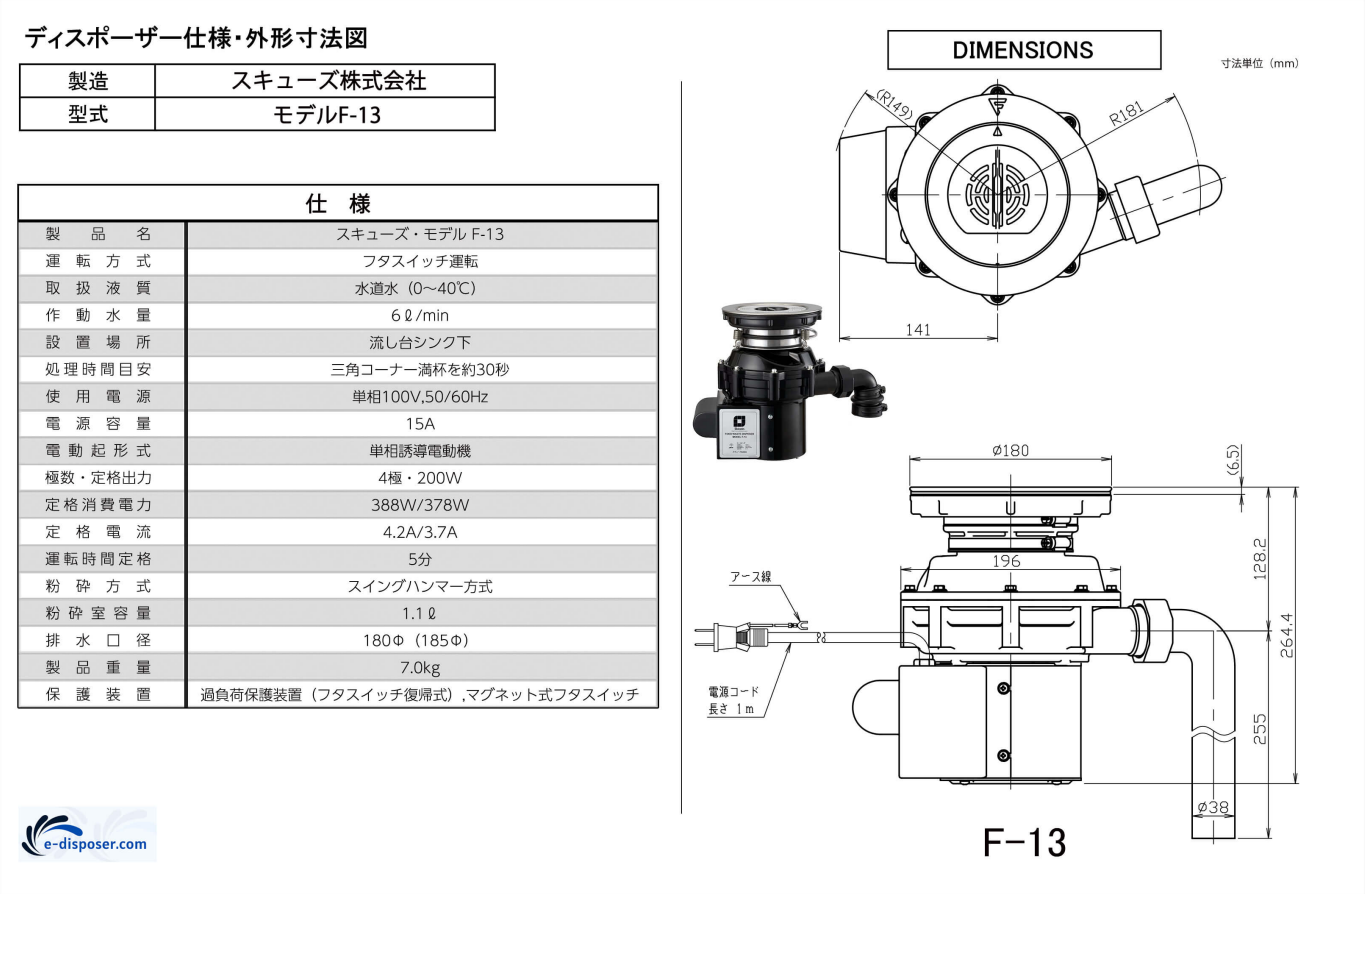 日本未入荷 スキューズ ディスポーザー モデルF-13 蓋スイッチ式モデル 取付標準部材 OPキット付